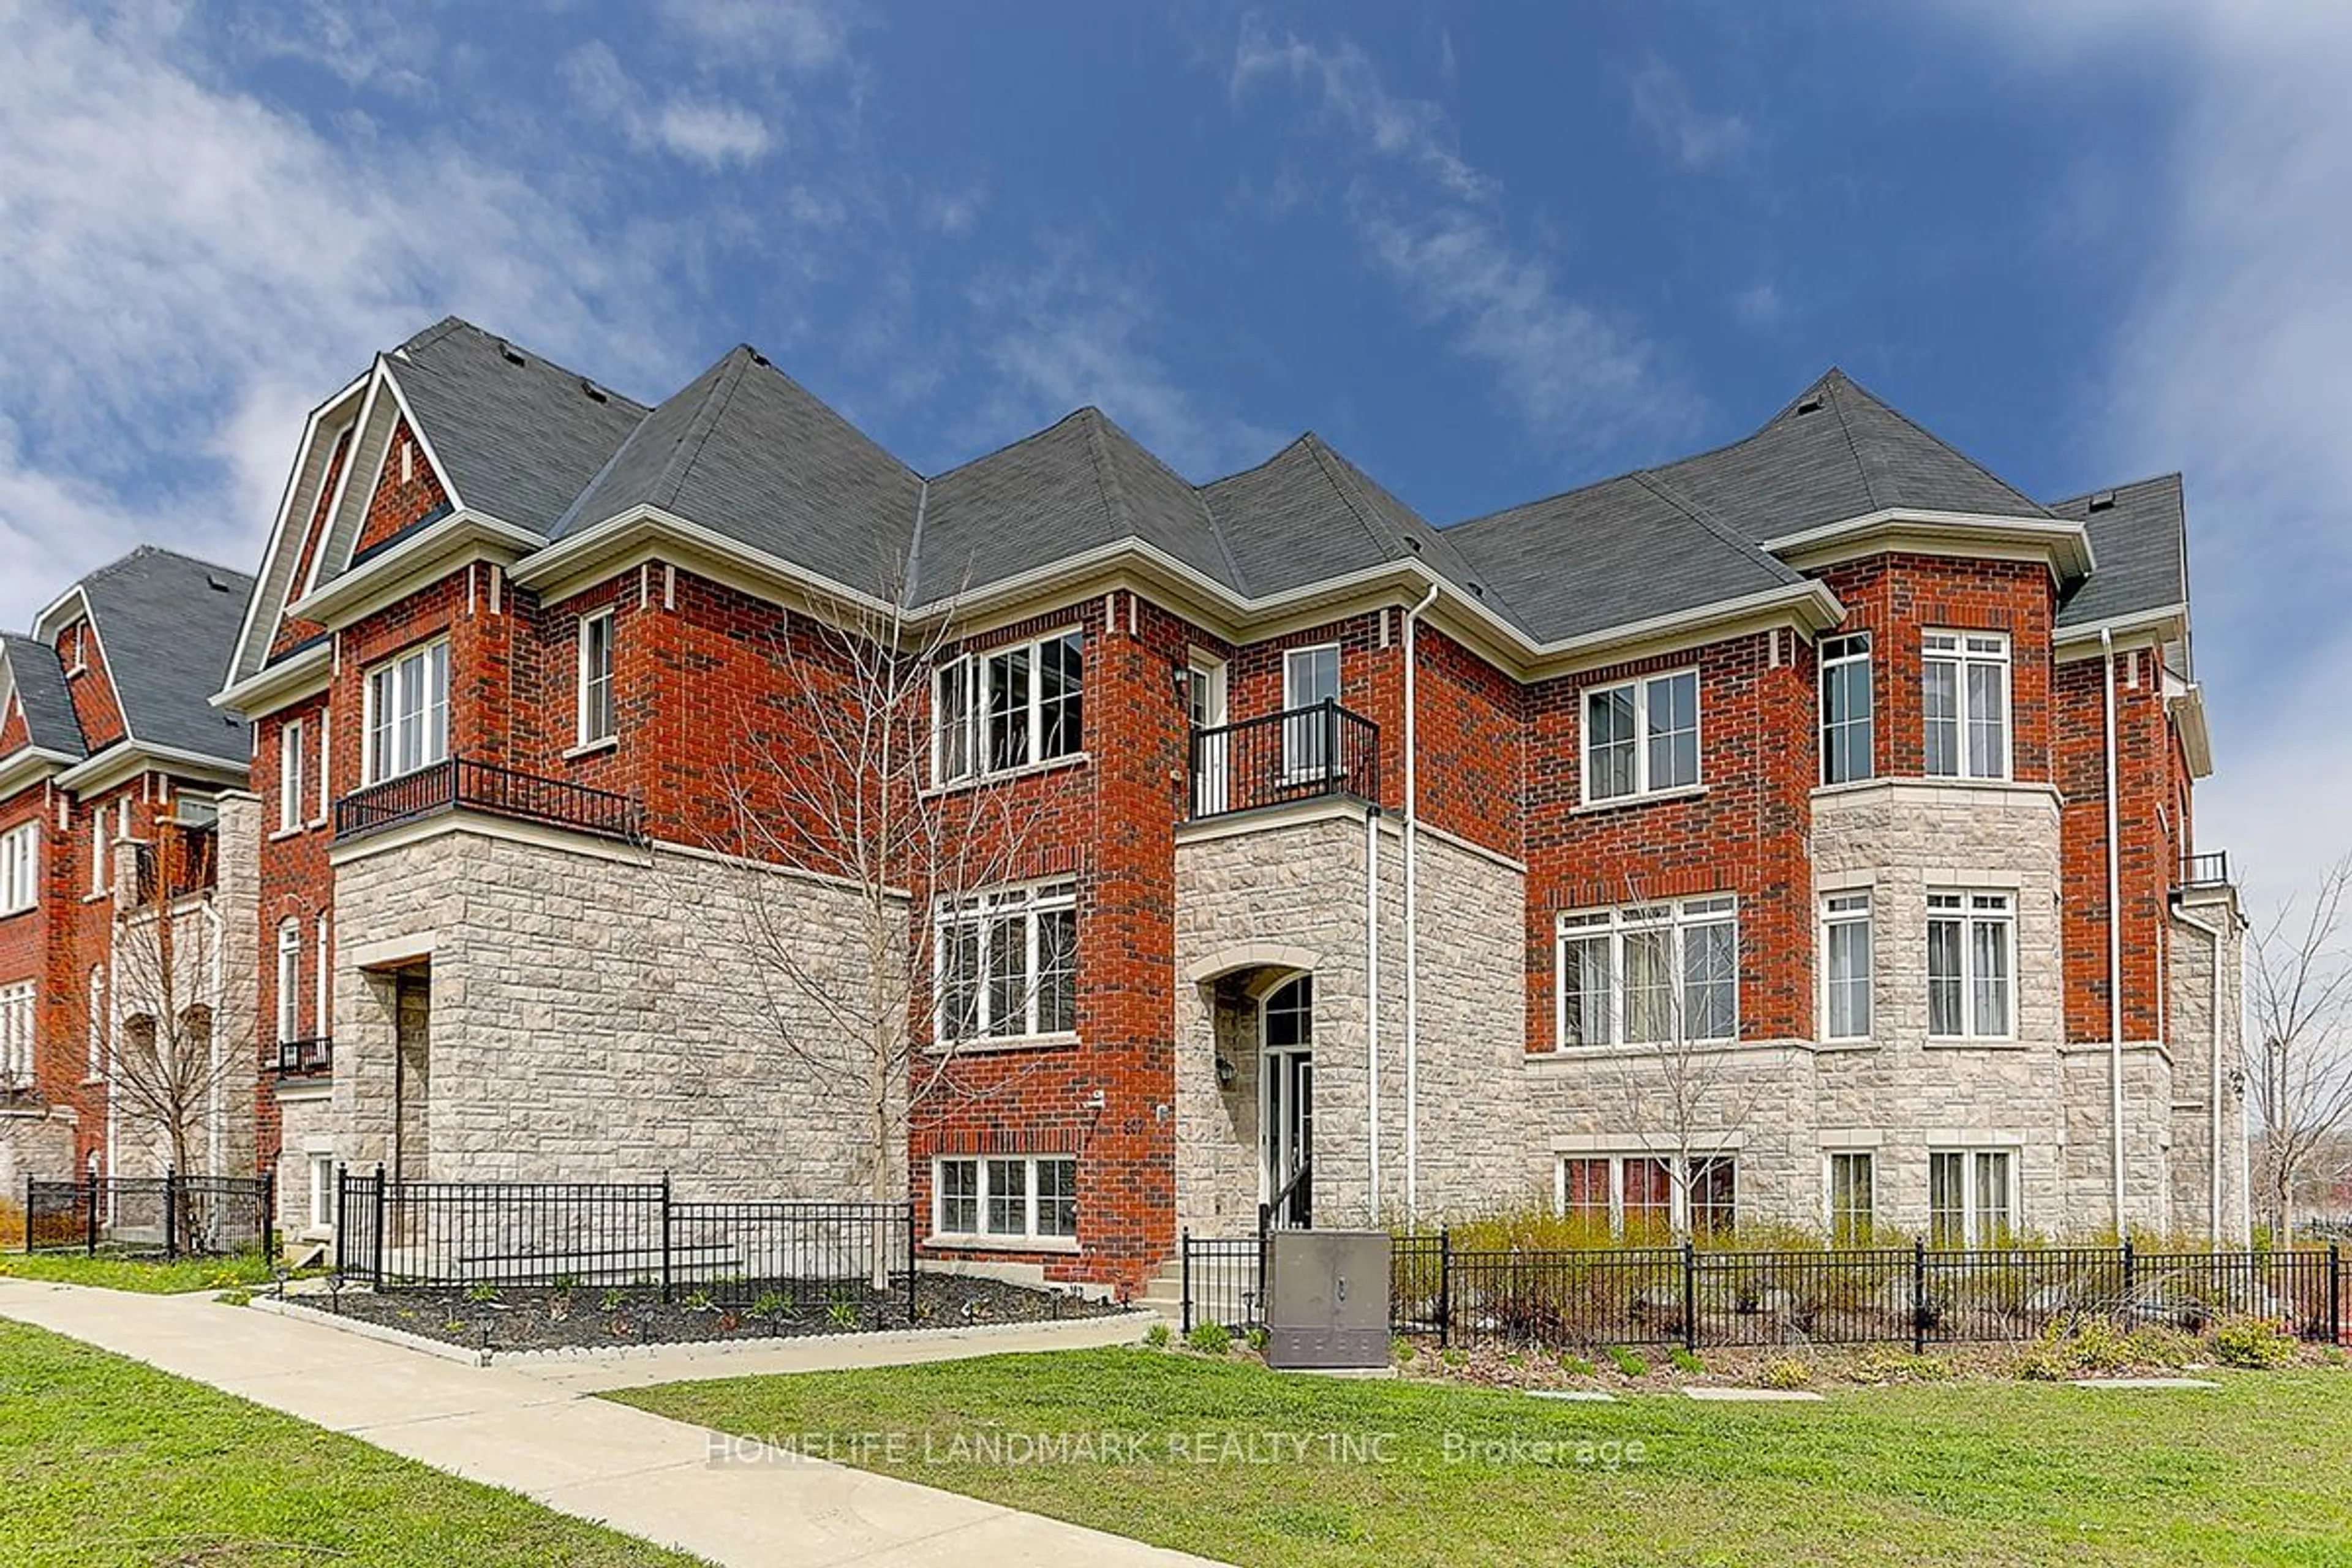 Home with brick exterior material for 307 Dundas Way, Markham Ontario L6E 0S8